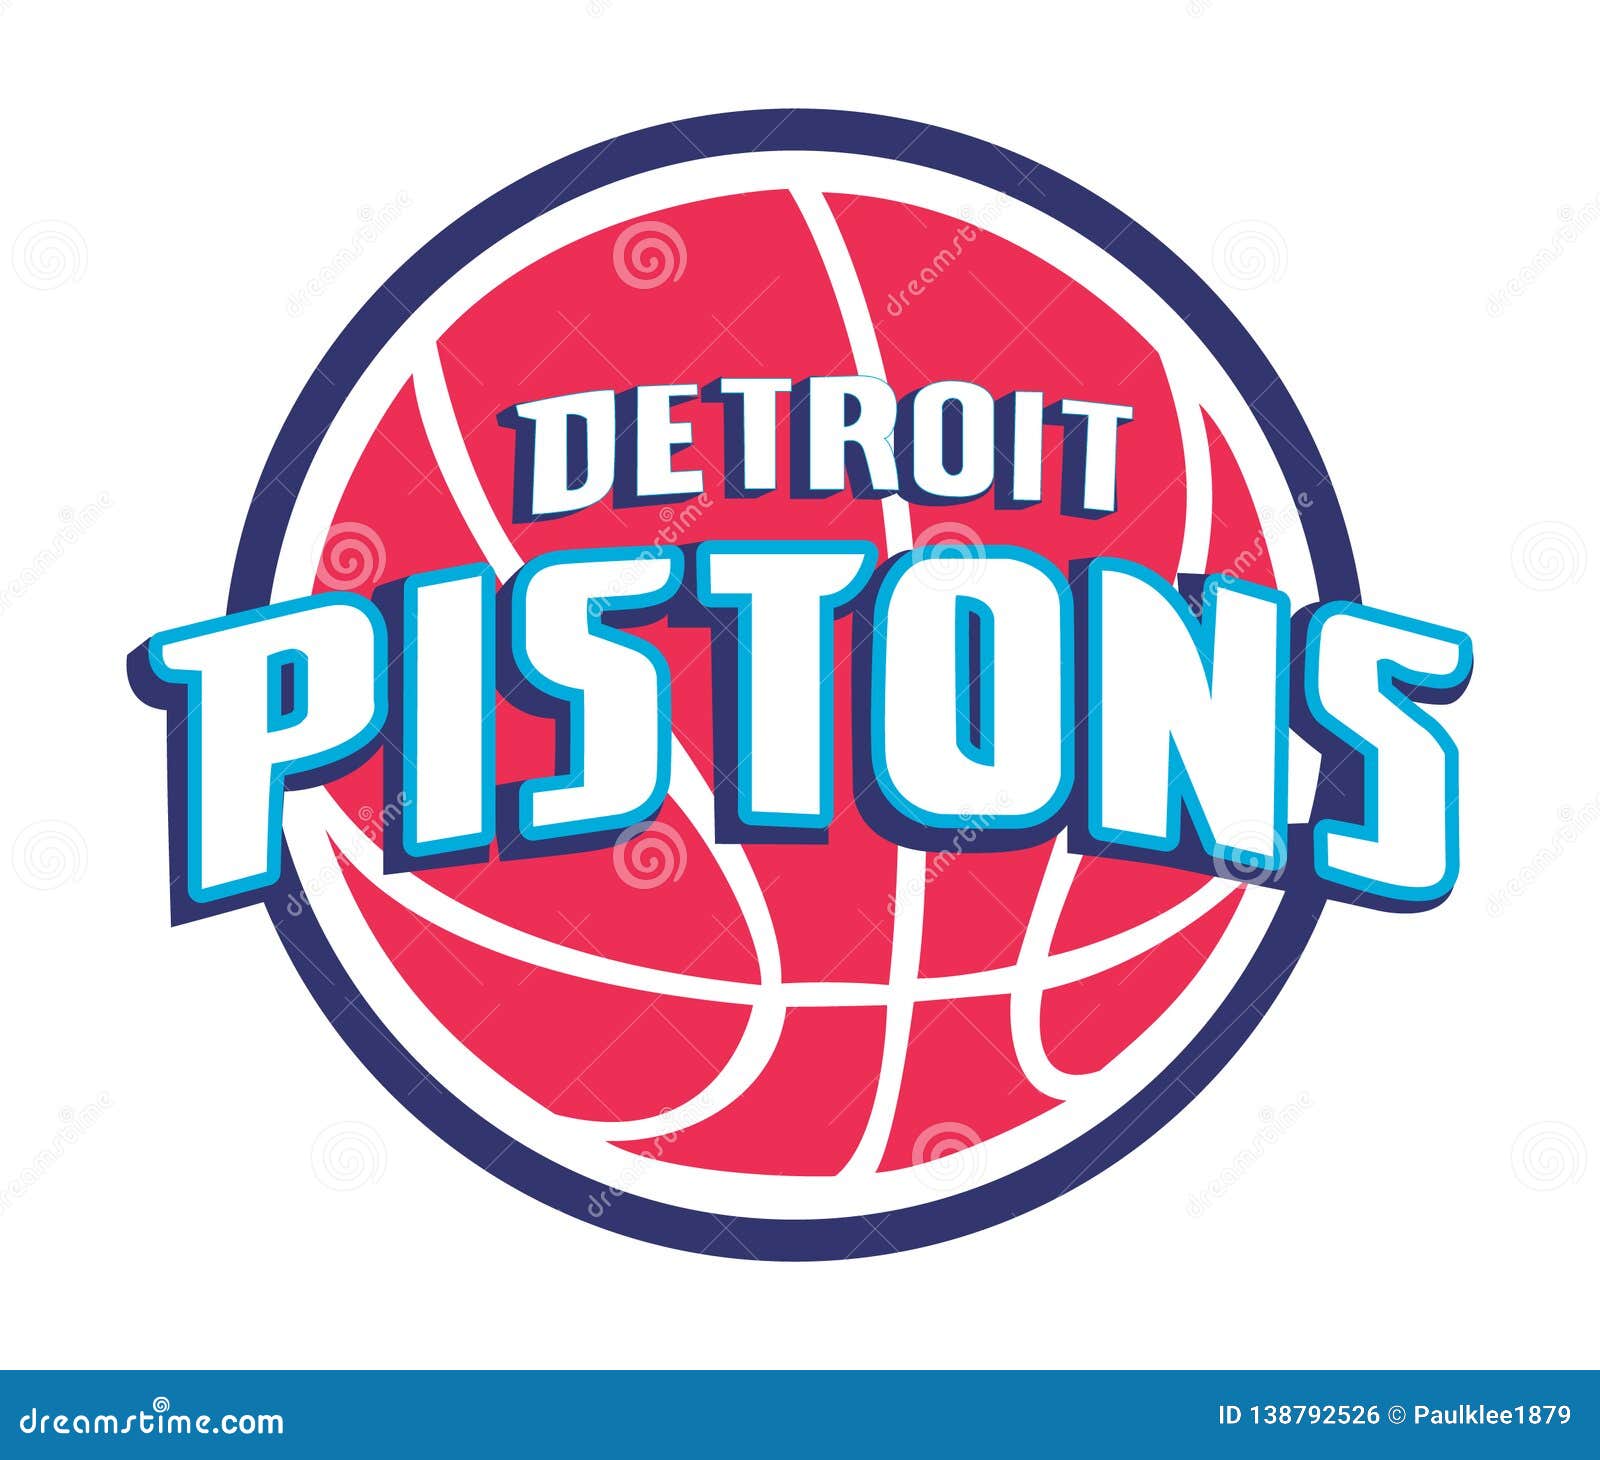 Collection of NBA Team Logos Vector Illustration Editorial Photo ...